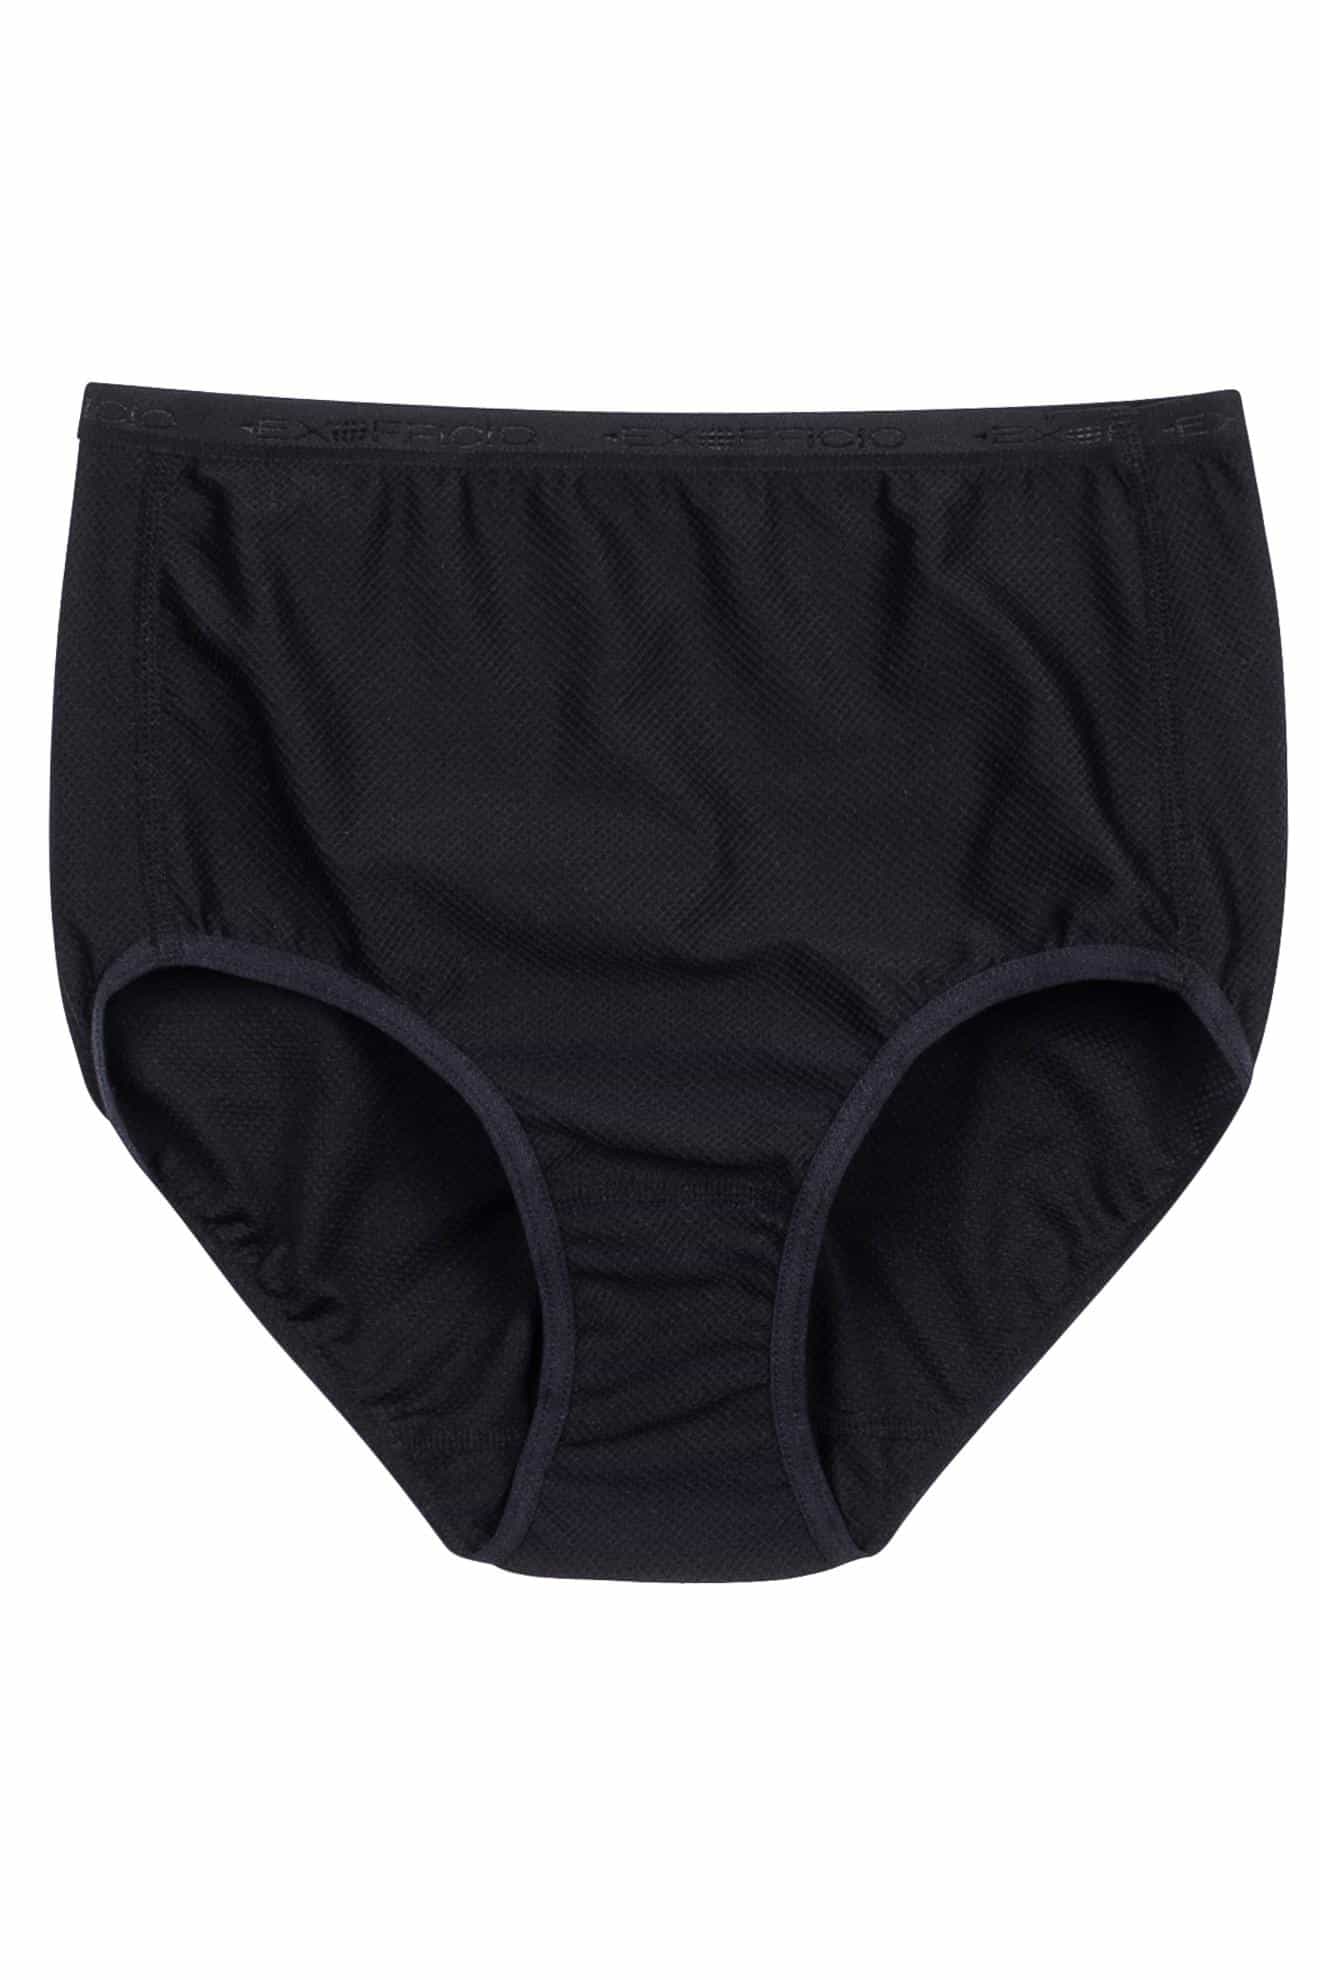 Exofficio Men's Give-N-Go Sport Mesh Brief Travel Underwear – Pack Light